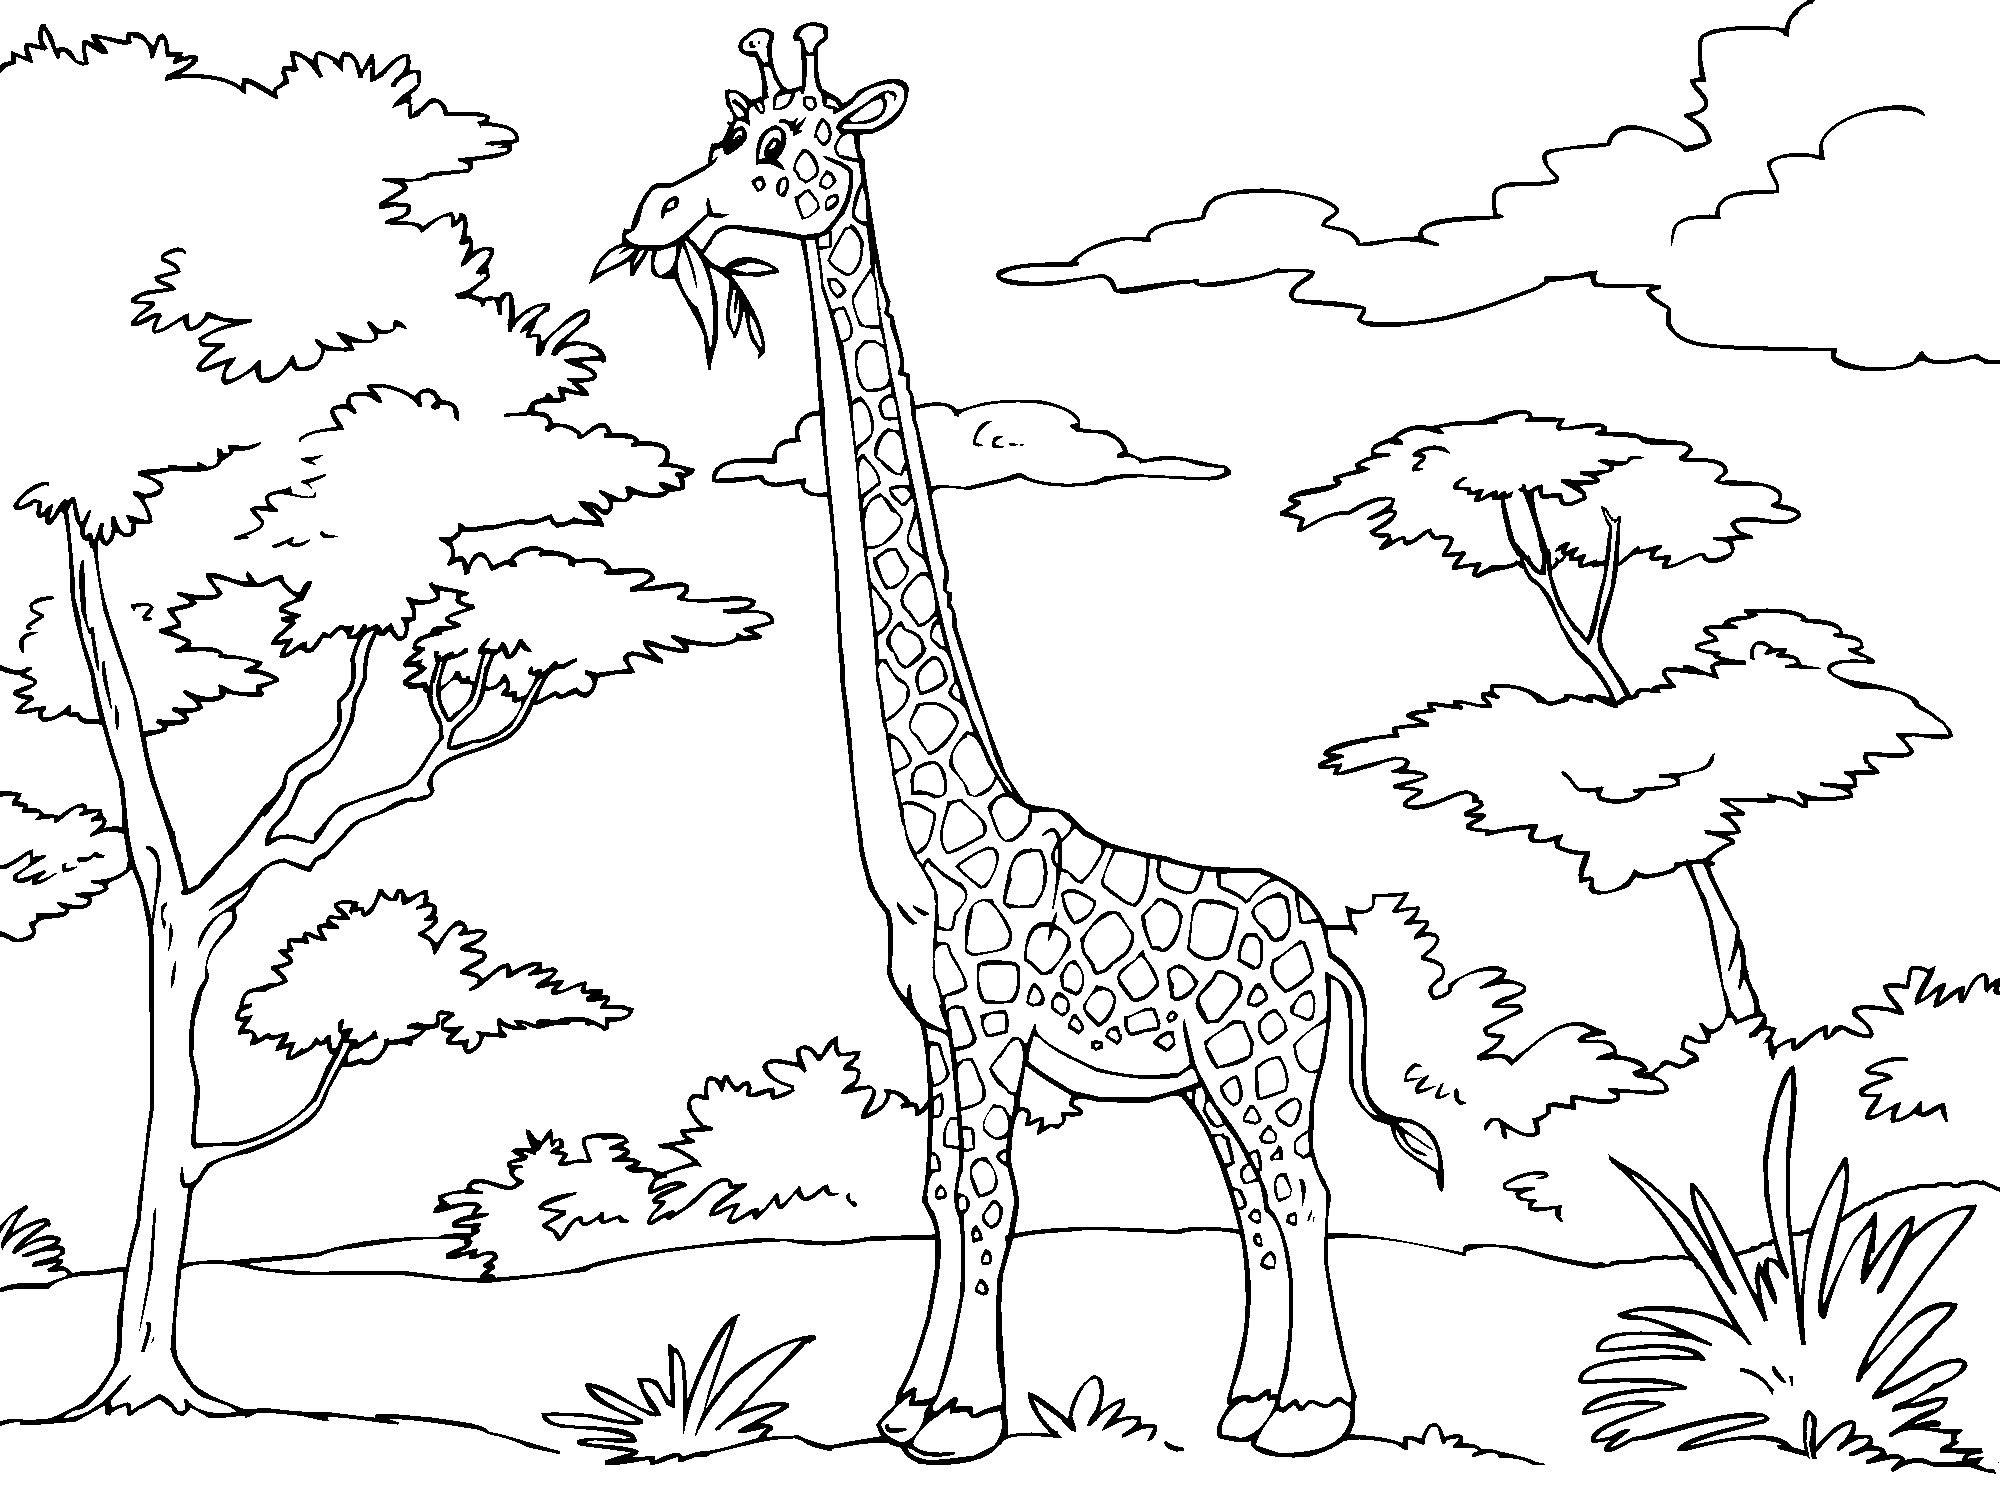 Giraffa che mangia foglie dall’ albero disegno da colorare